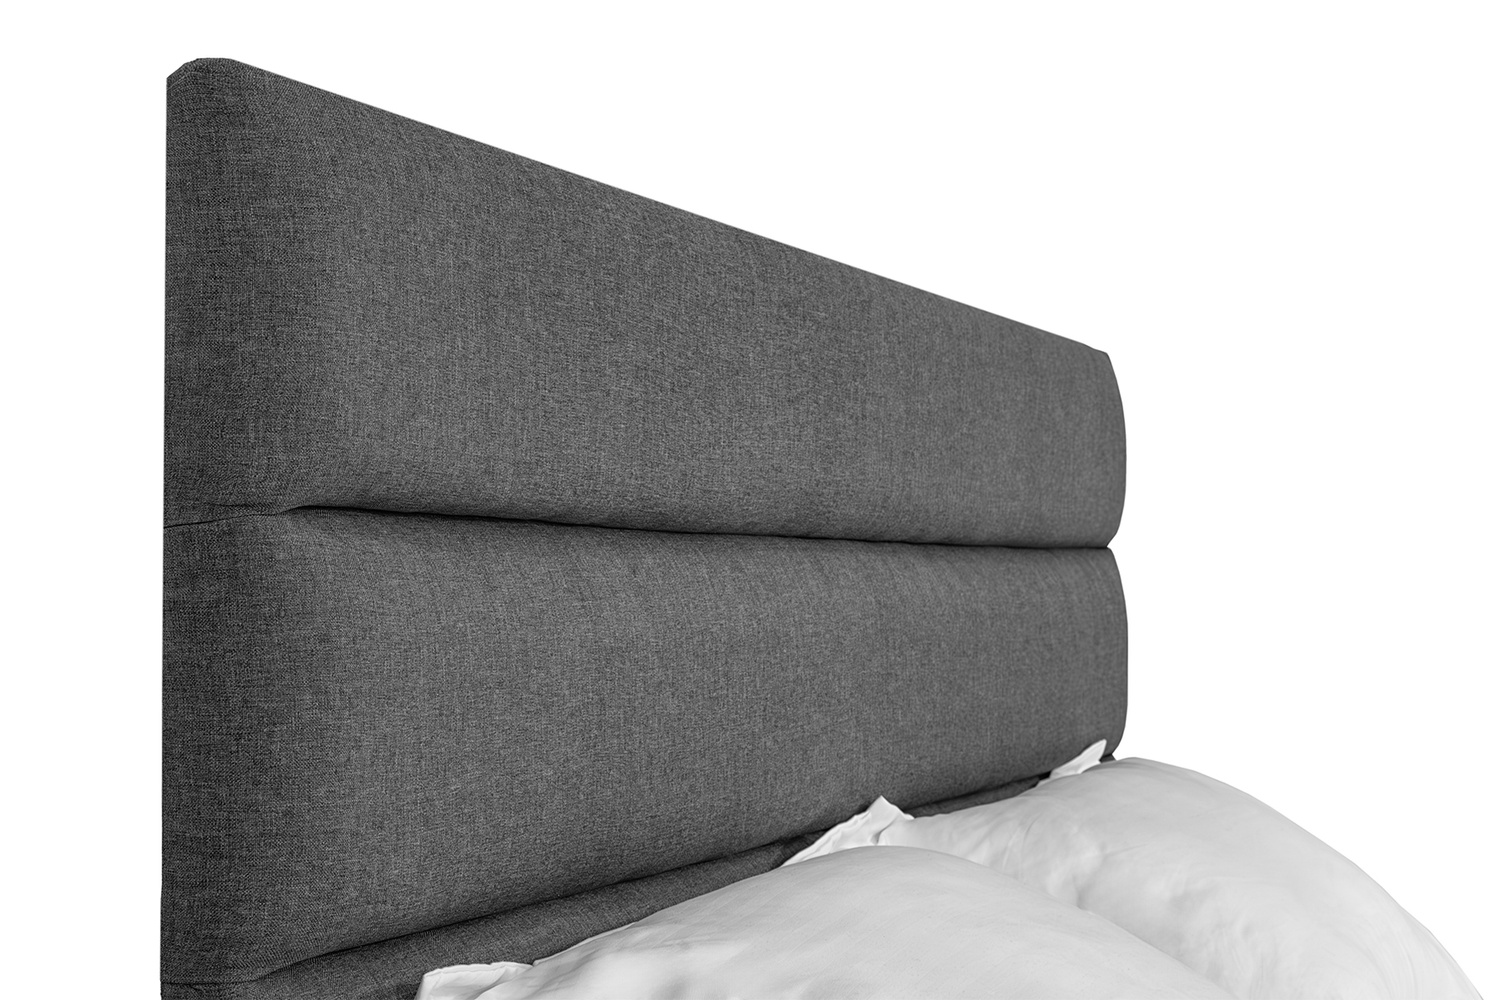 Кровать Лилия 140х190 (Серый, рогожка, без подъемного механизма) IMI lllrg140x190sb фото